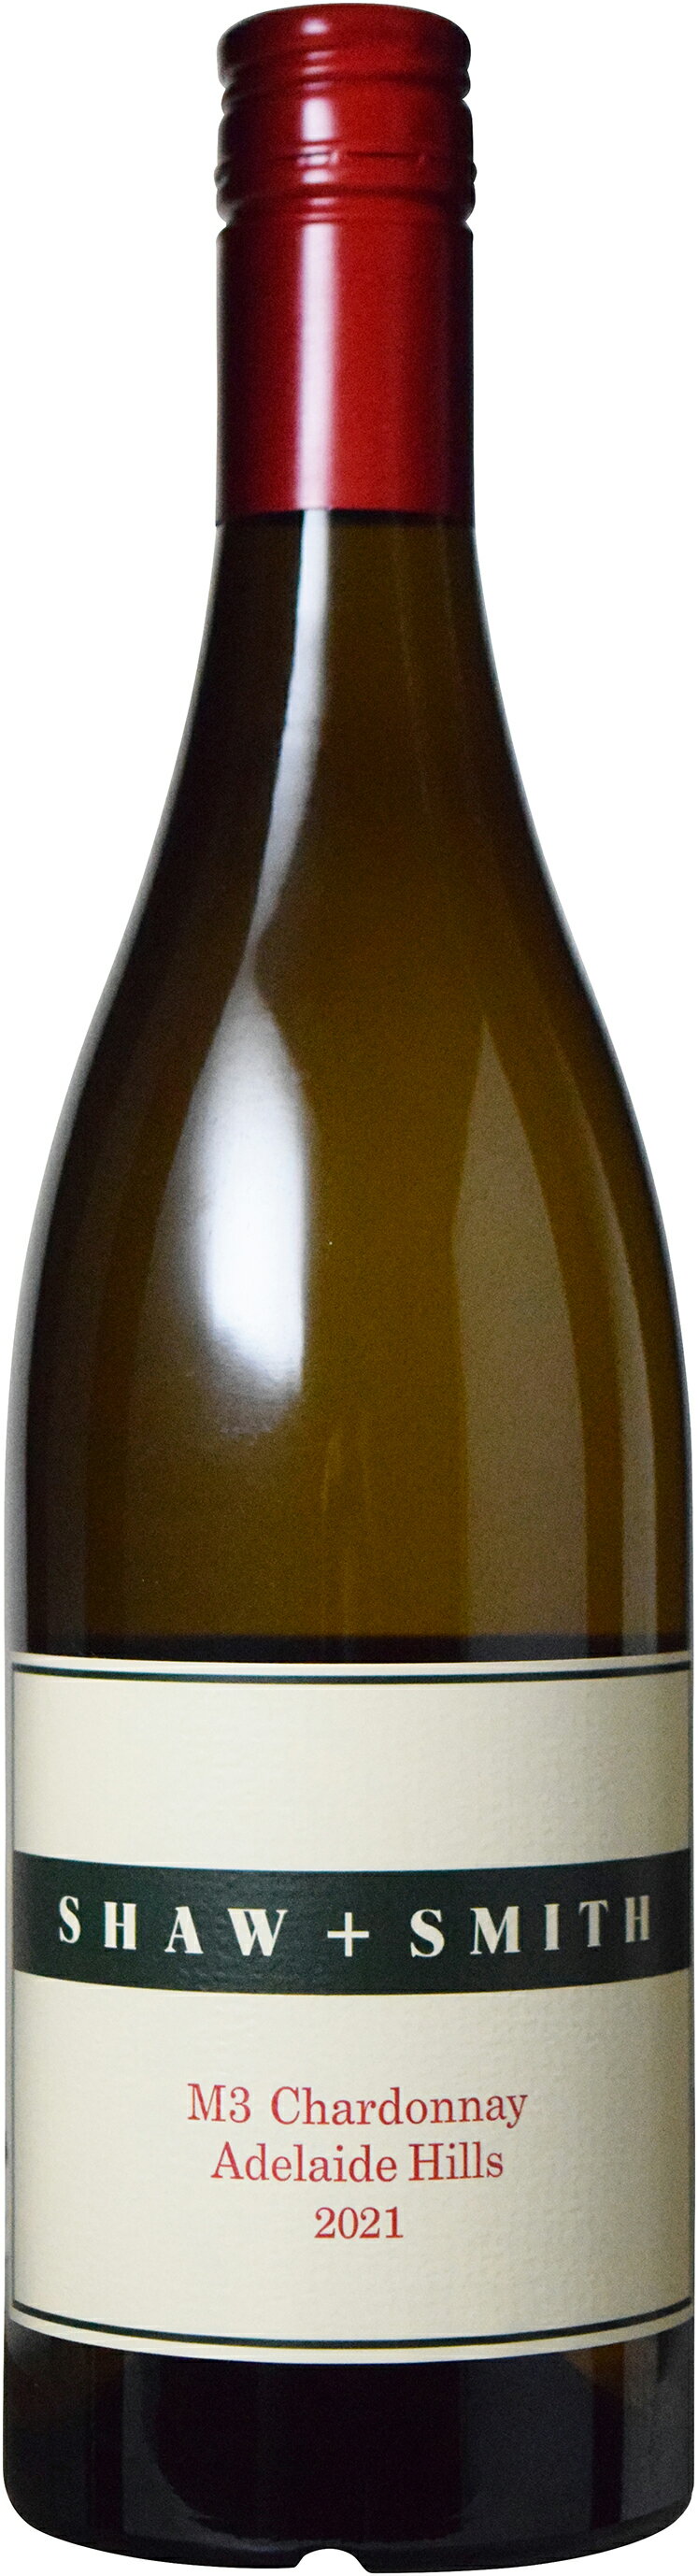 　ショウ アンド スミス M3 シャルドネ 2021白ワイン 辛口 750ml オーストラリア サウス オーストラリア アデレード ヒルズギフト ワインセット　ギフト 父の日 金賞 750ML おすすめ